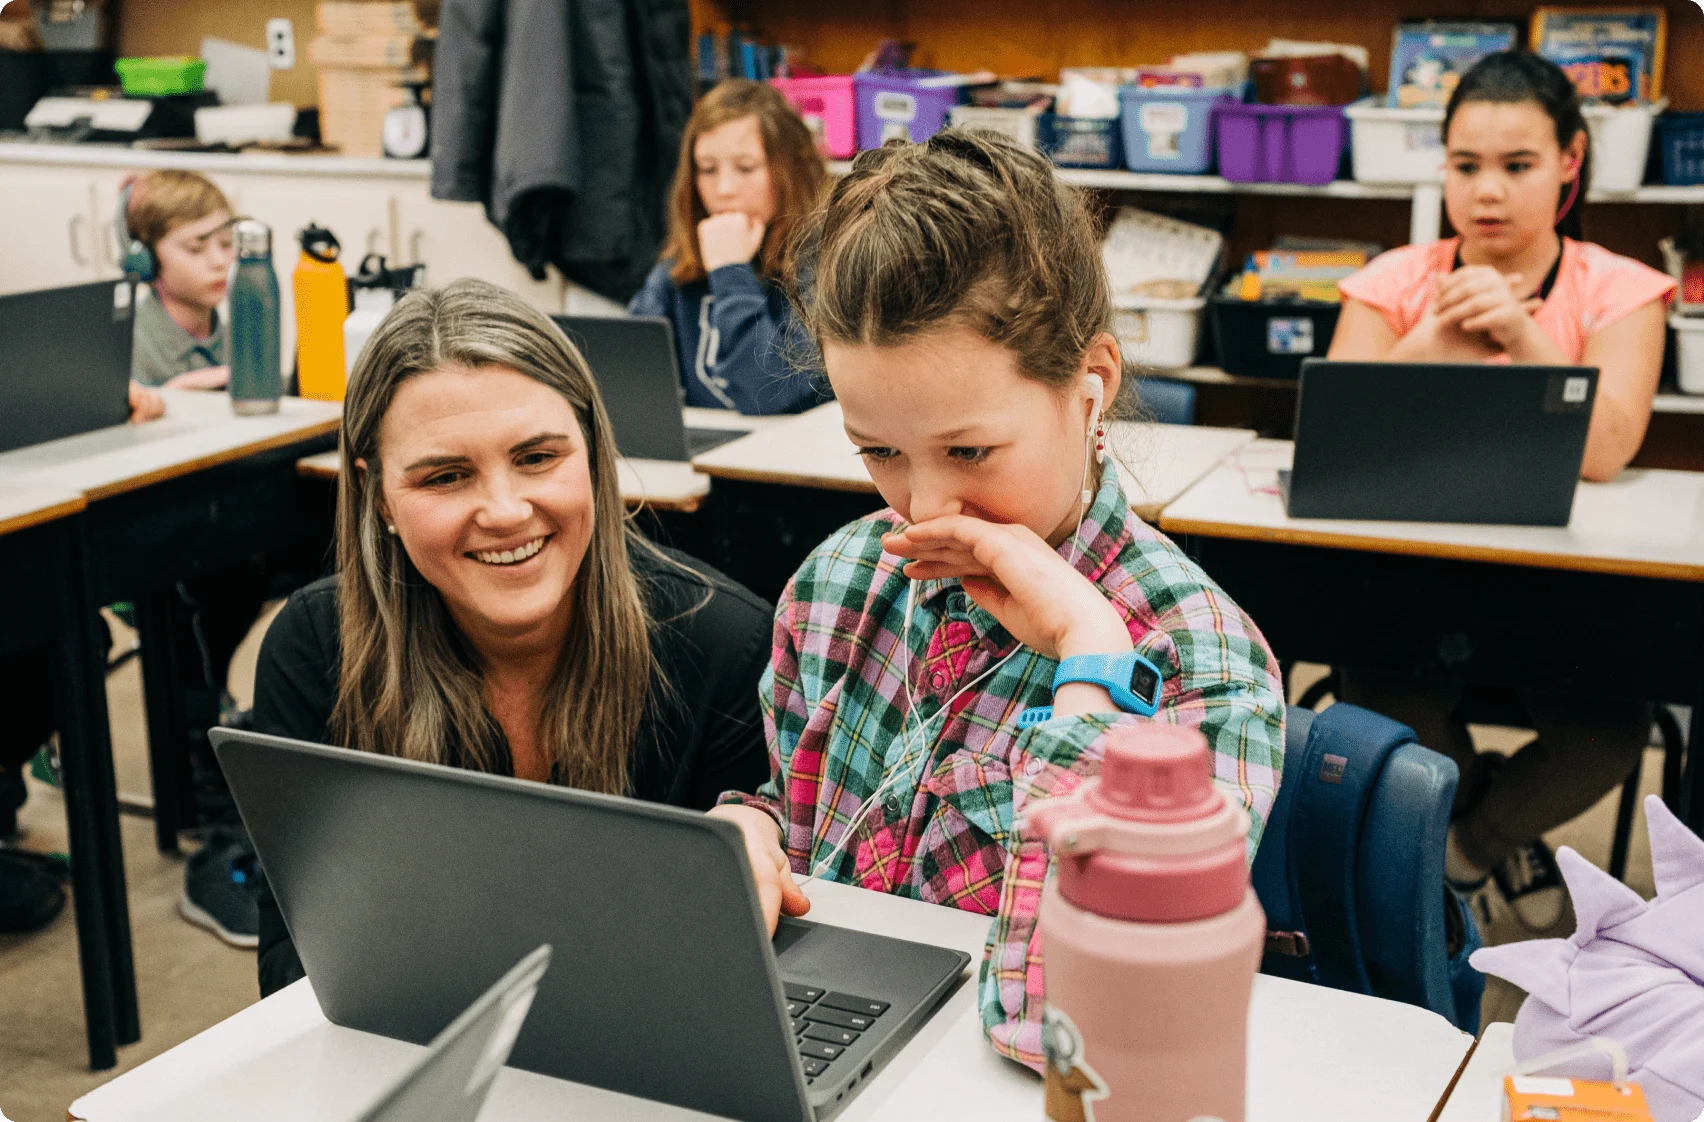 Julia Rivard Dexter, fondatrice de Shoelace, souriant à côté d’une élève jouant à un jeu sur son ordinateur portable.